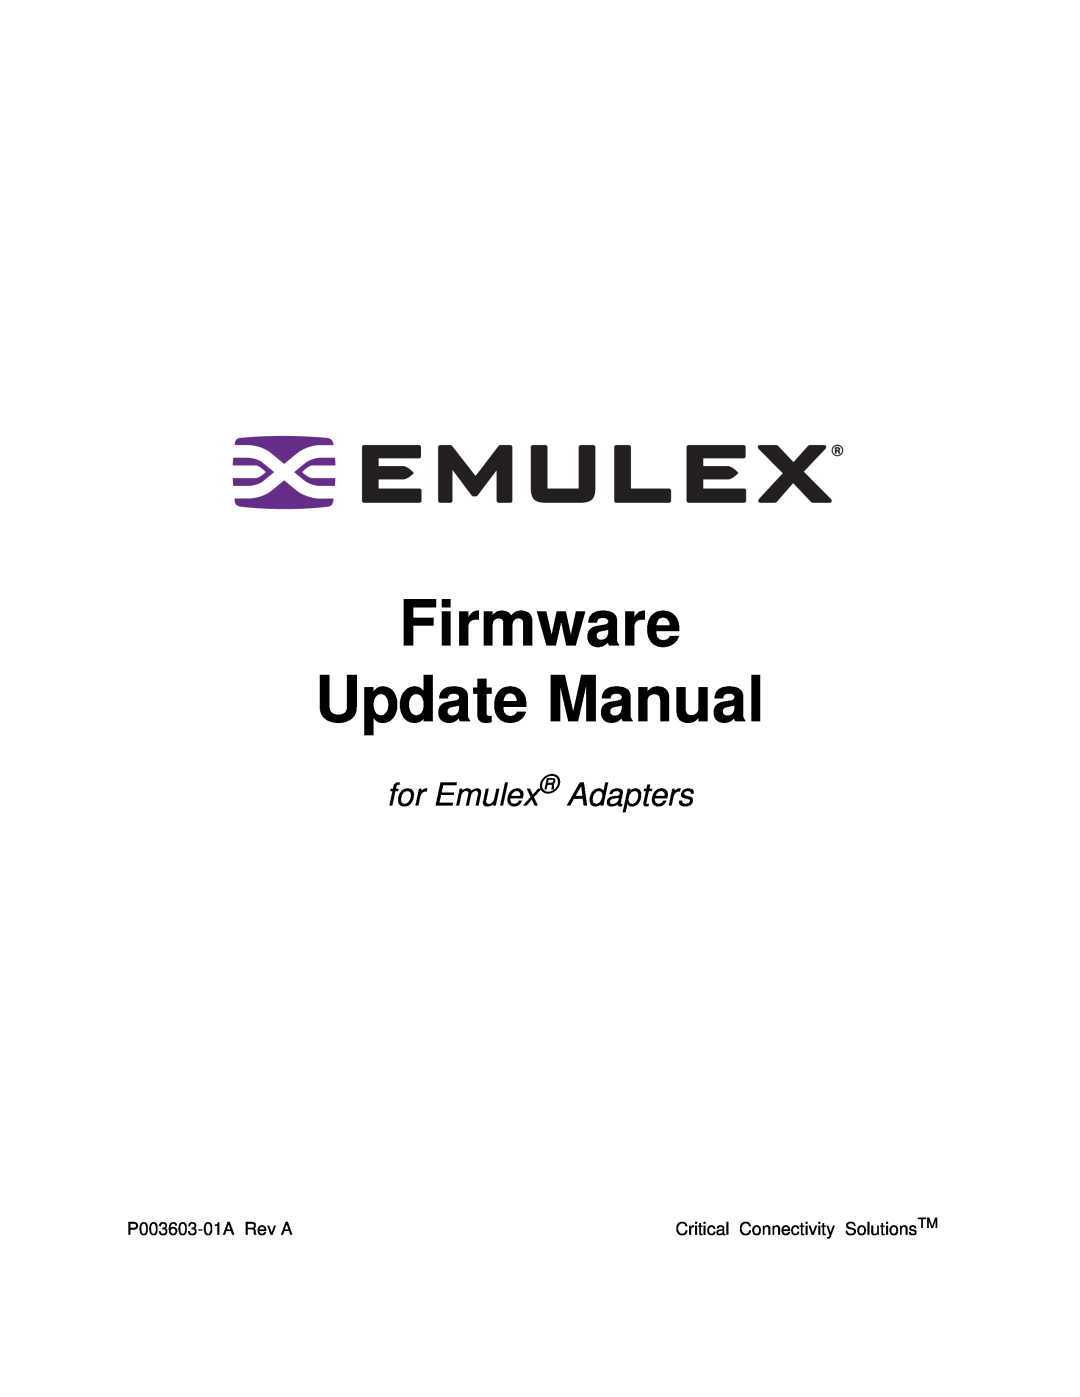 Emulex manual Firmware Update Manual, for Emulex Adapters 